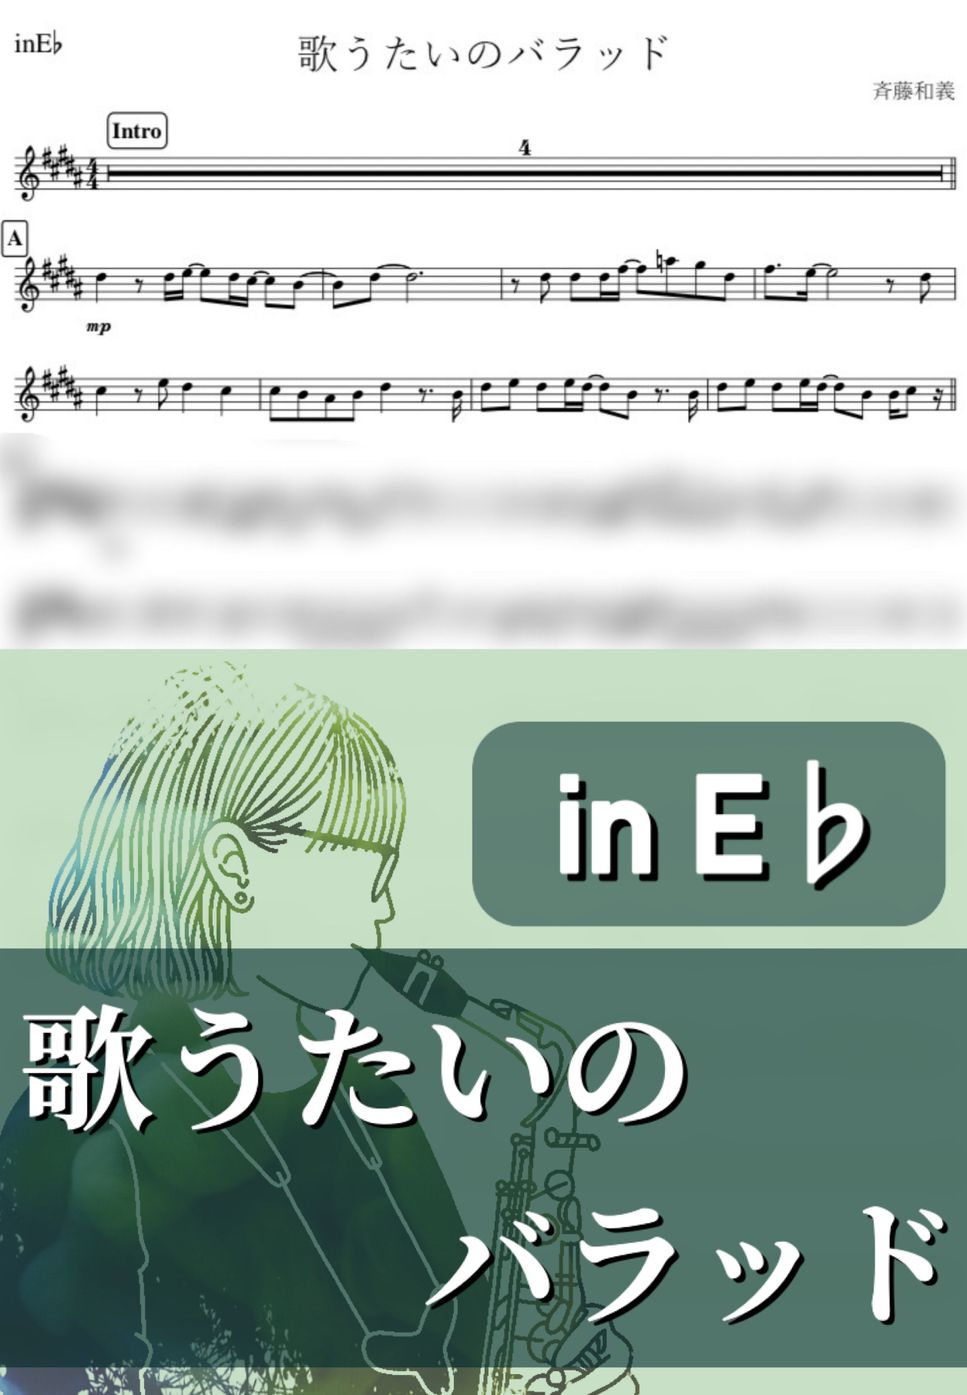 斉藤和義 - 歌うたいのバラッド (E♭) by kanamusic